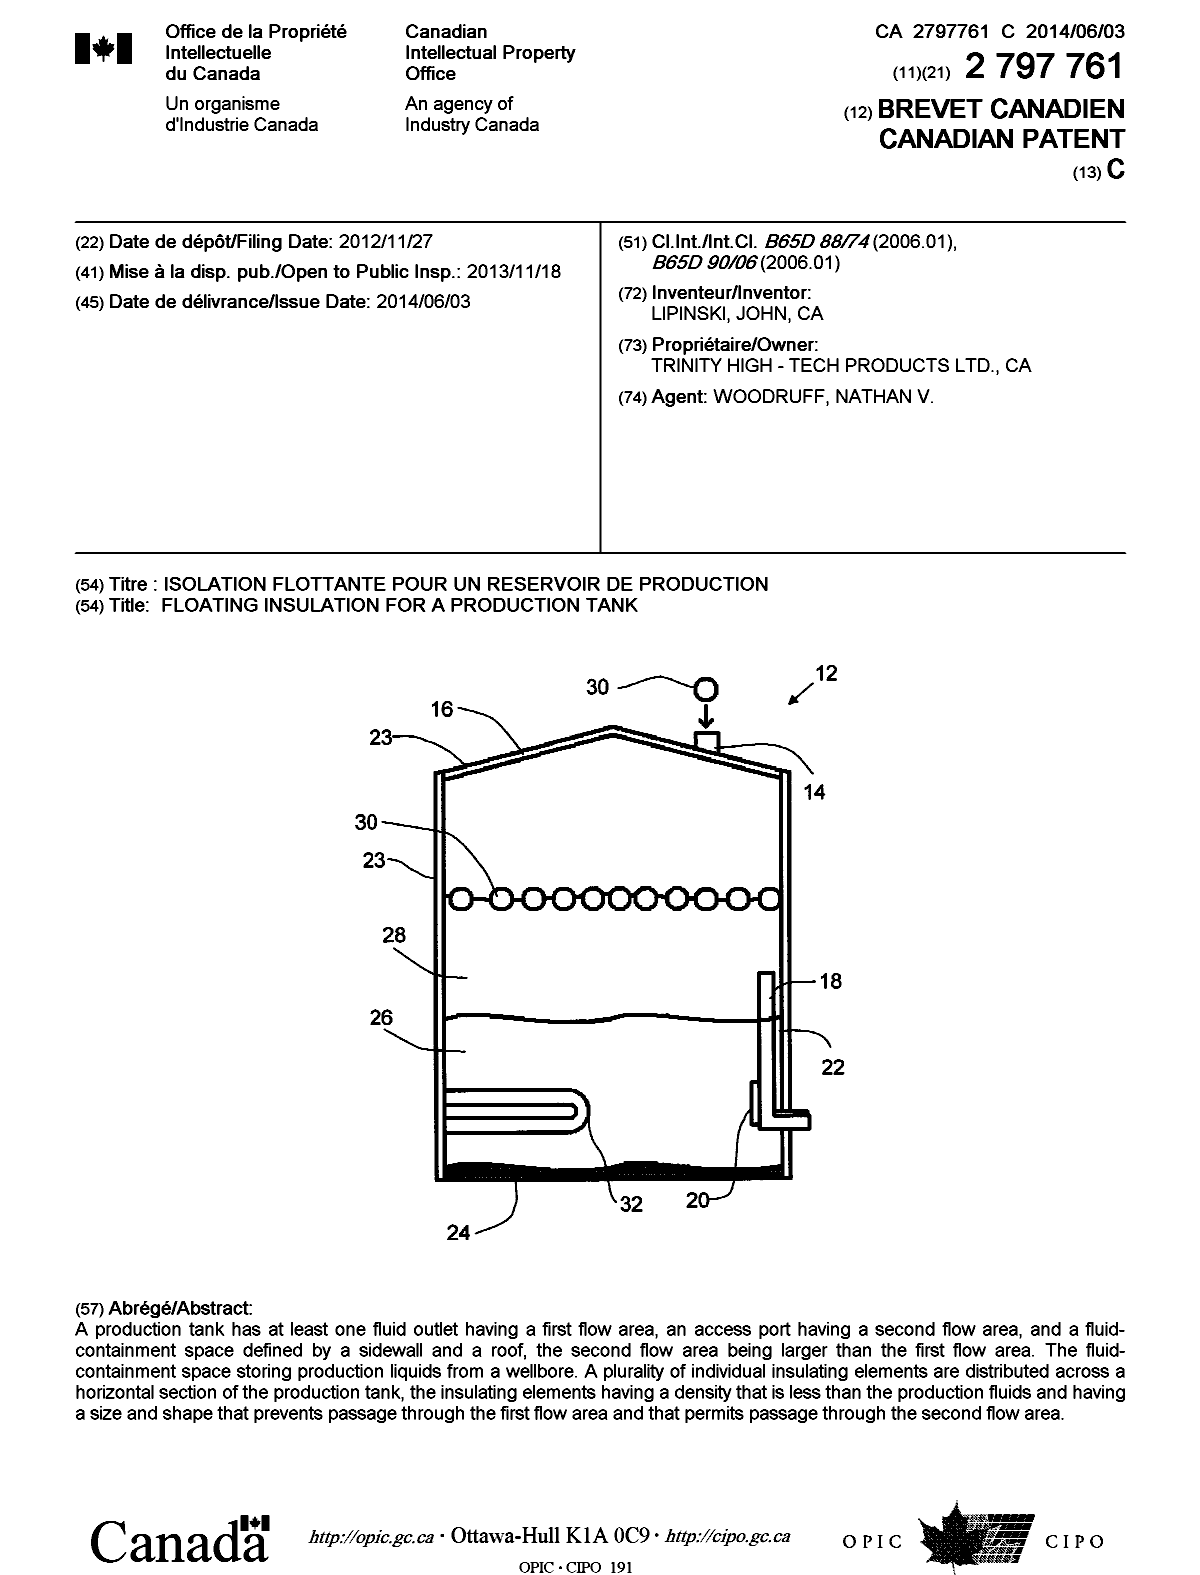 Document de brevet canadien 2797761. Page couverture 20140515. Image 1 de 1